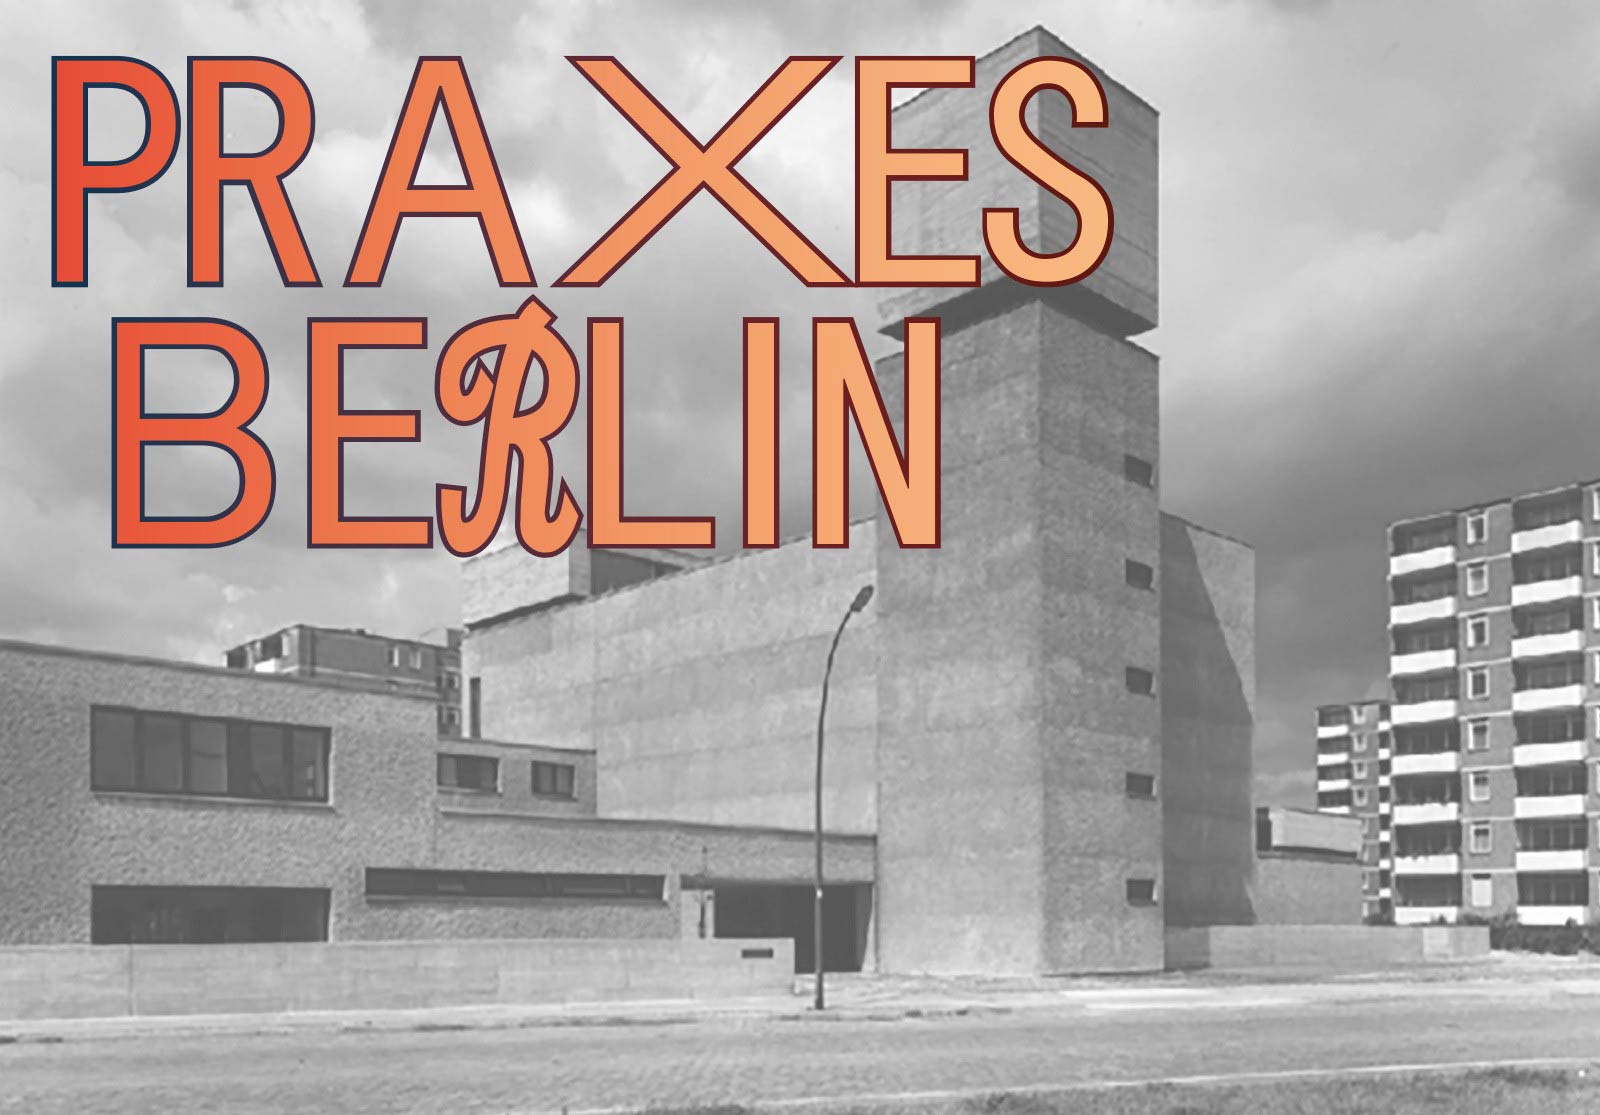 Praxes_berlin03-1600x1115-web